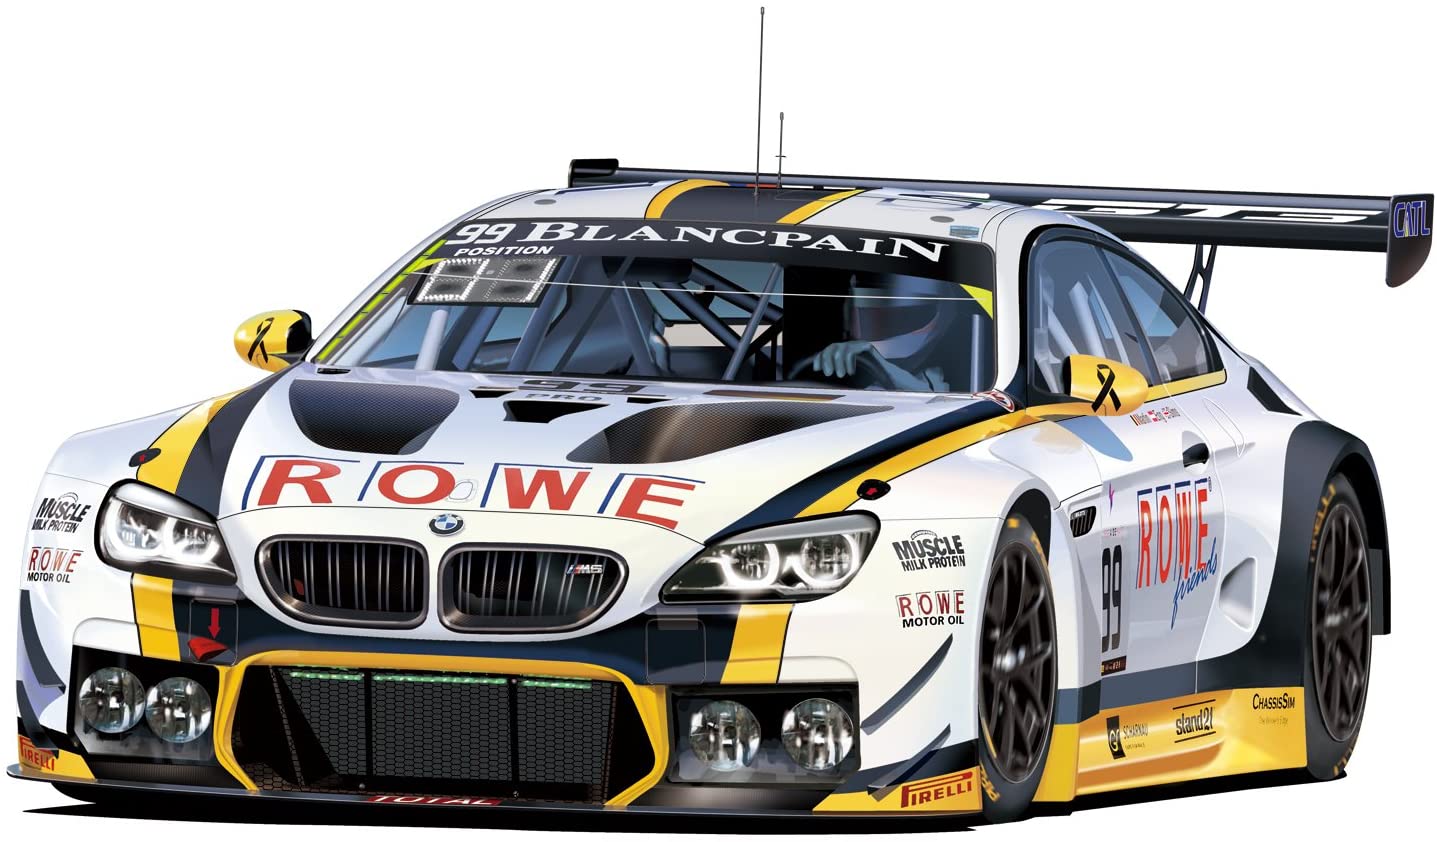 Platts 1/24 racing series BMW M6 GT3 2017 Nürburgring 24 Hours race